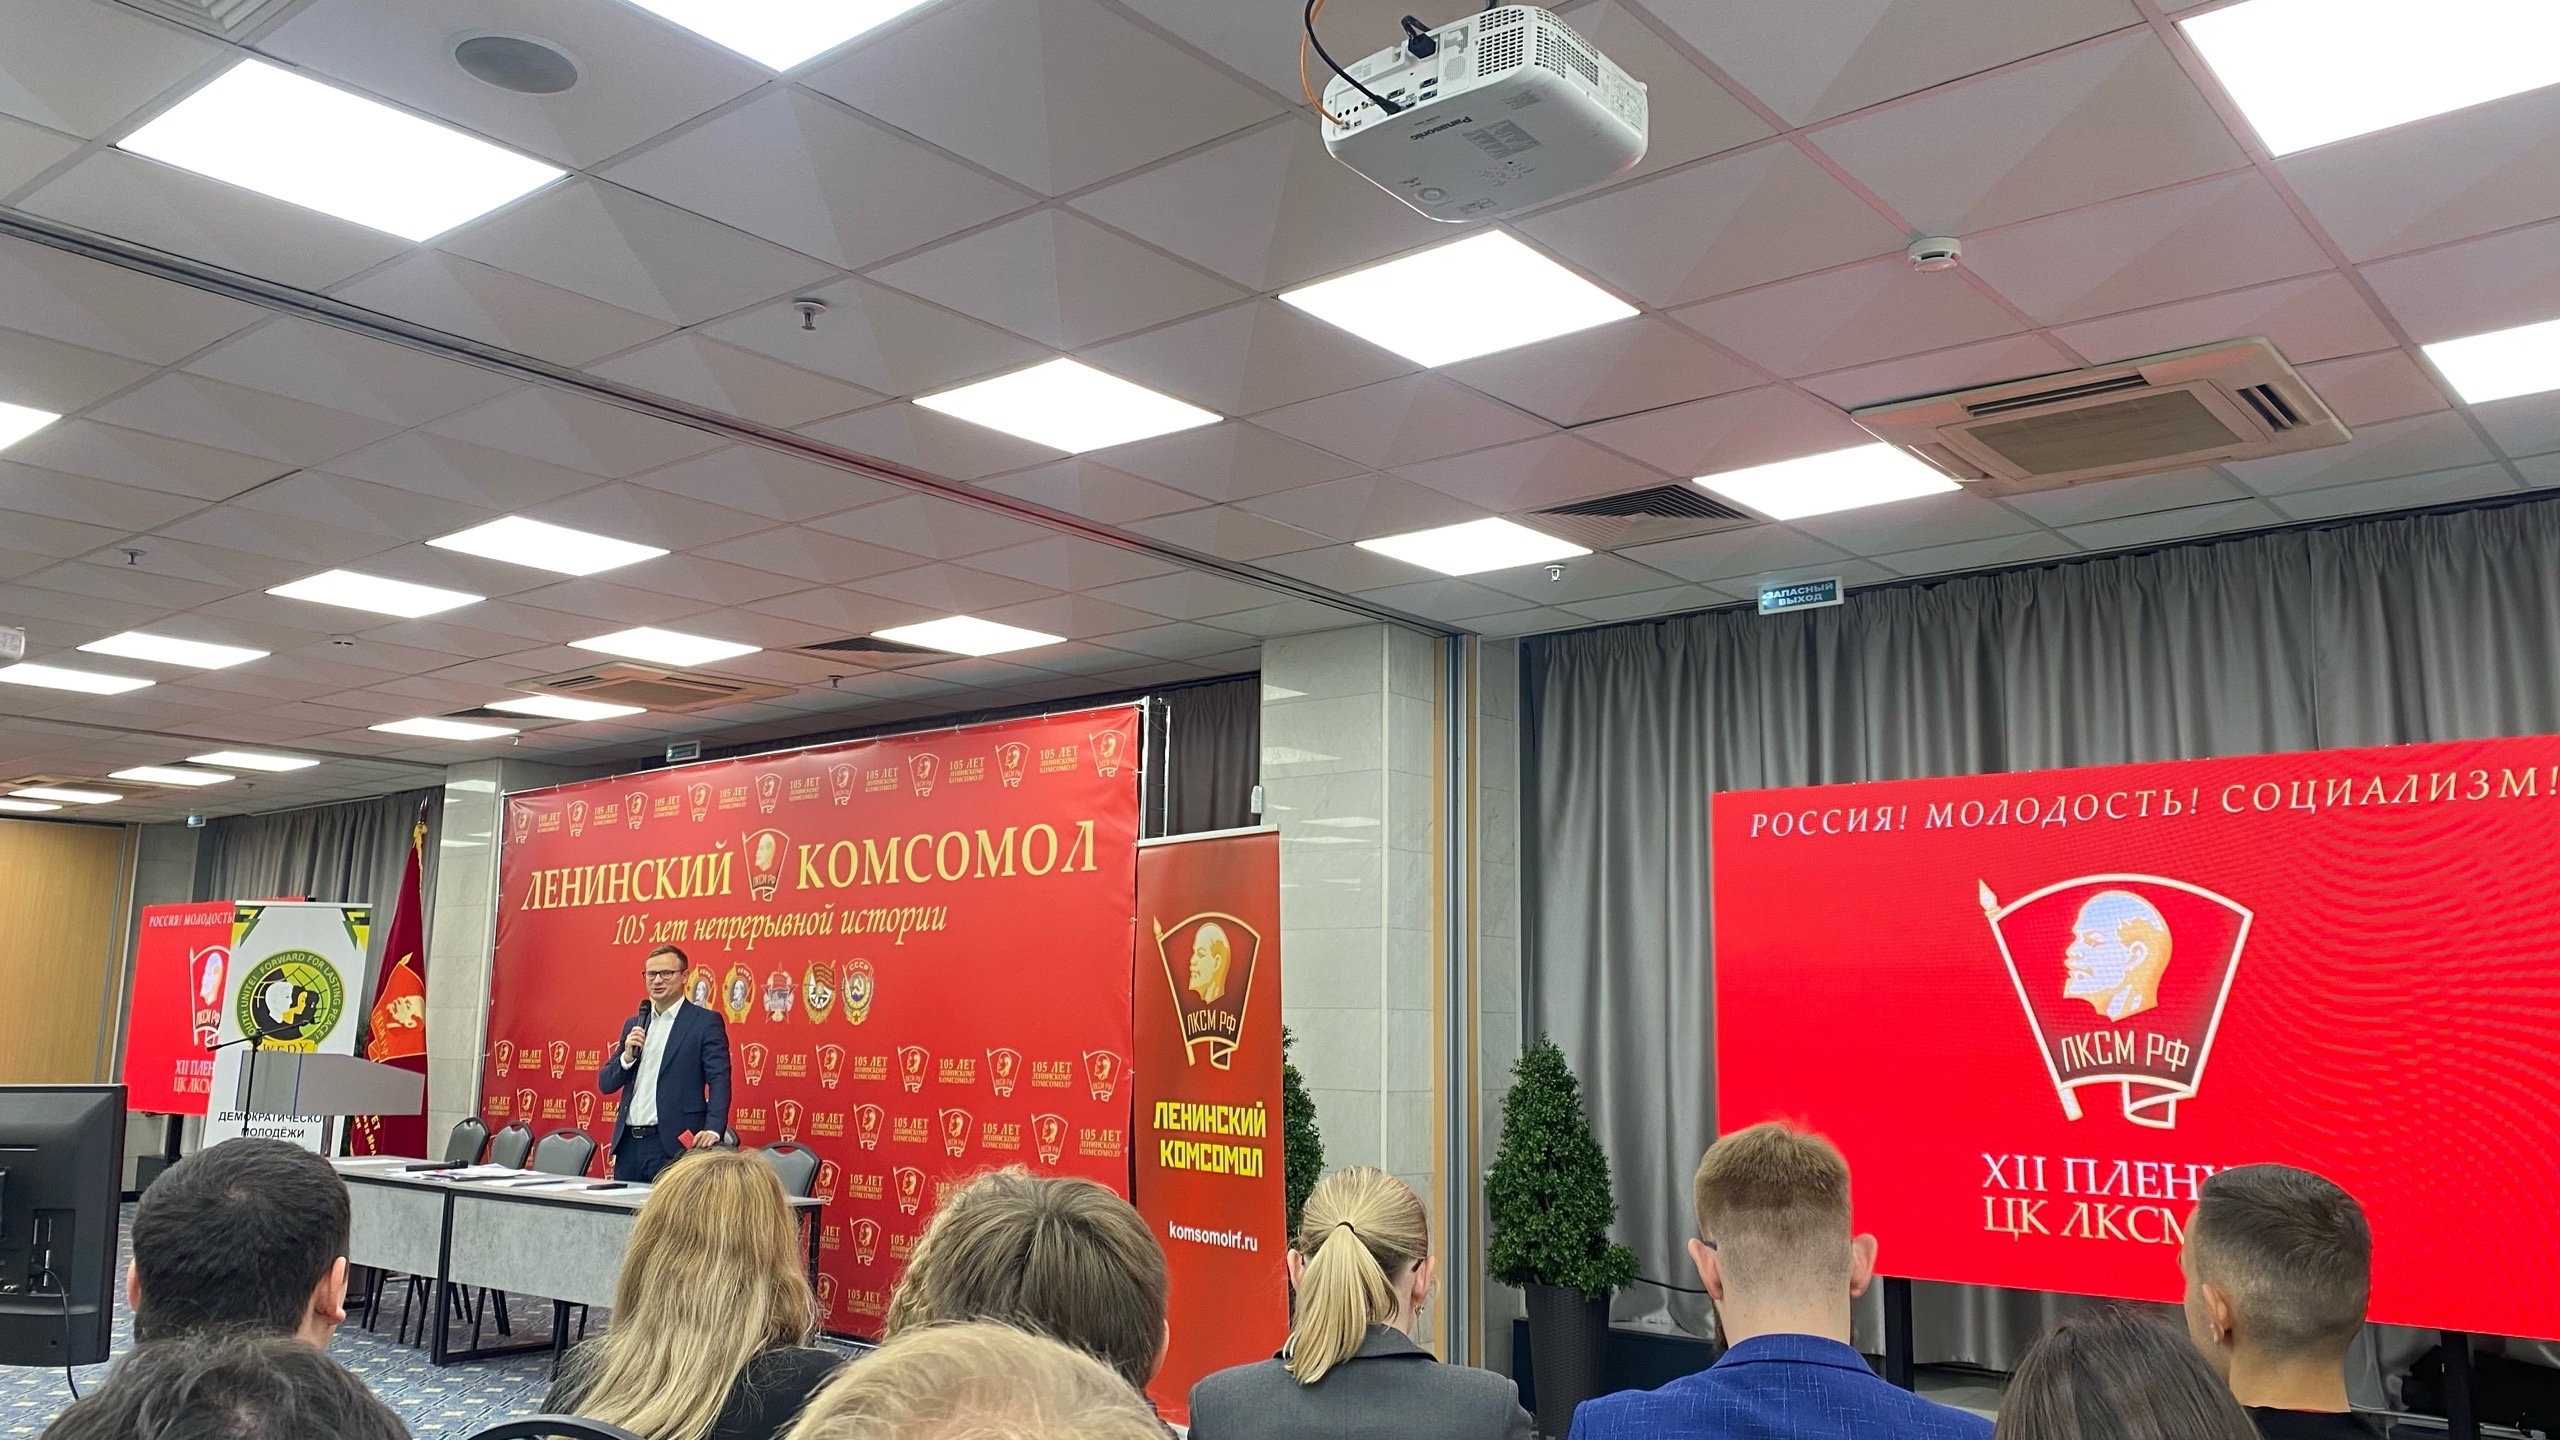 Комсомол отметил свой юбилей работой Съезда и другими мероприятиями